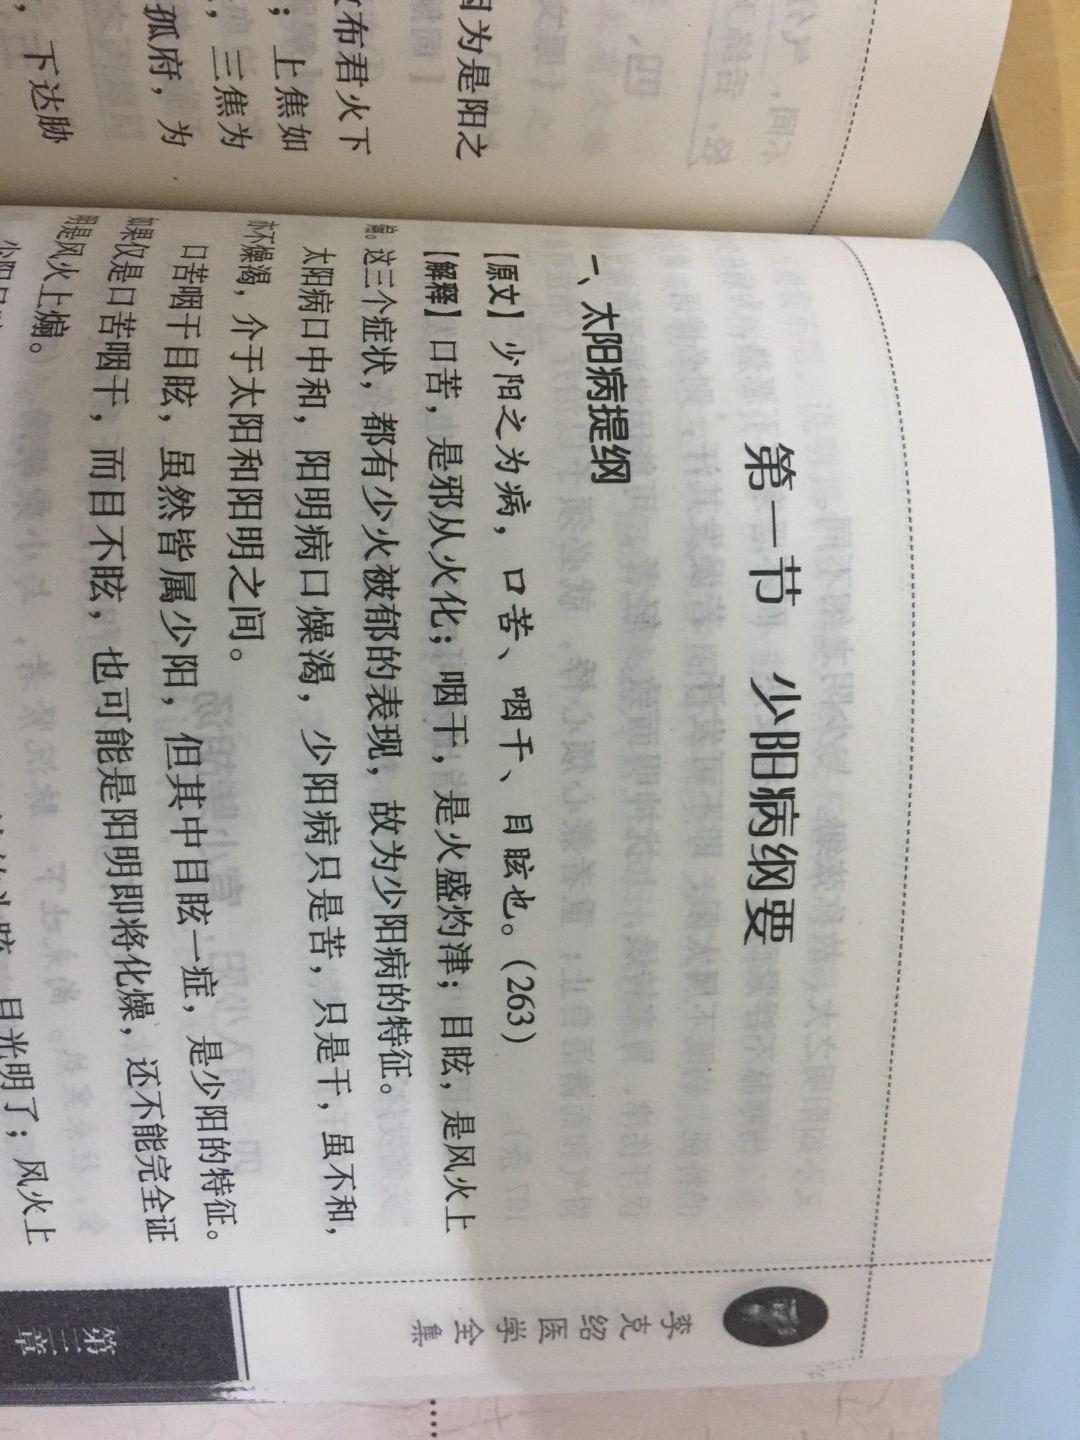 别的书还没有看，就只看《伤寒论讲义》看到少阳病就有这么大的错误！！！更不用说前边的两条标错的条码！！！都不要买这一版，中国医药科技出版社的书都特别差劲！！！！！！！